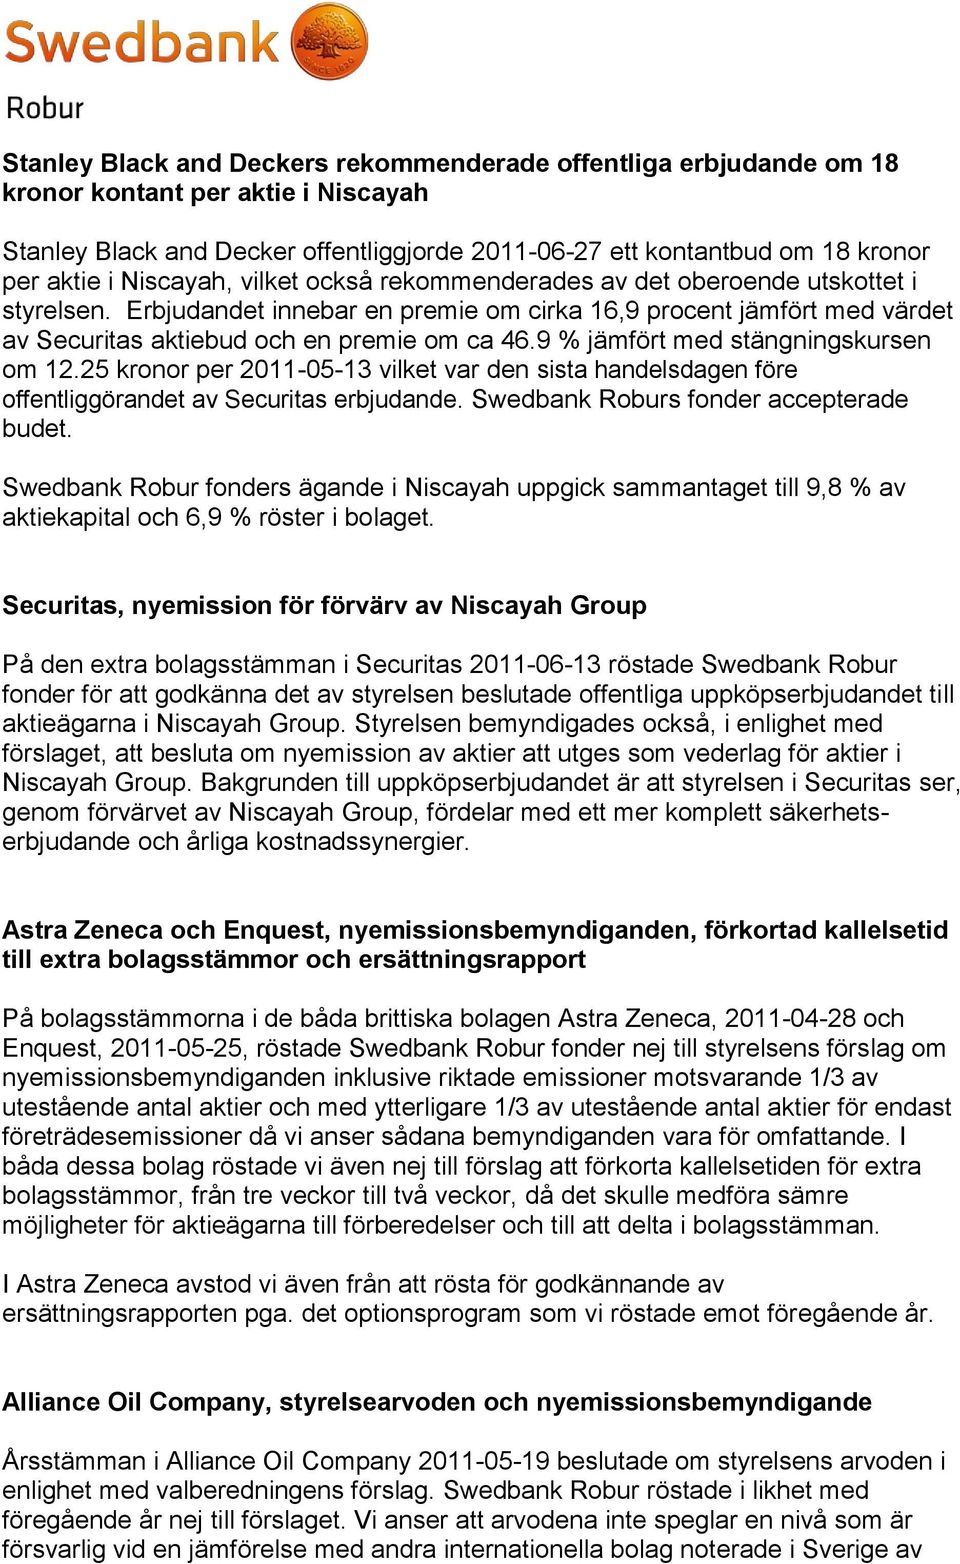 9 % jämfört med stängningskursen om 12.25 kronor per 2011-05-13 vilket var den sista handelsdagen före offentliggörandet av Securitas erbjudande. Swedbank Roburs fonder accepterade budet.